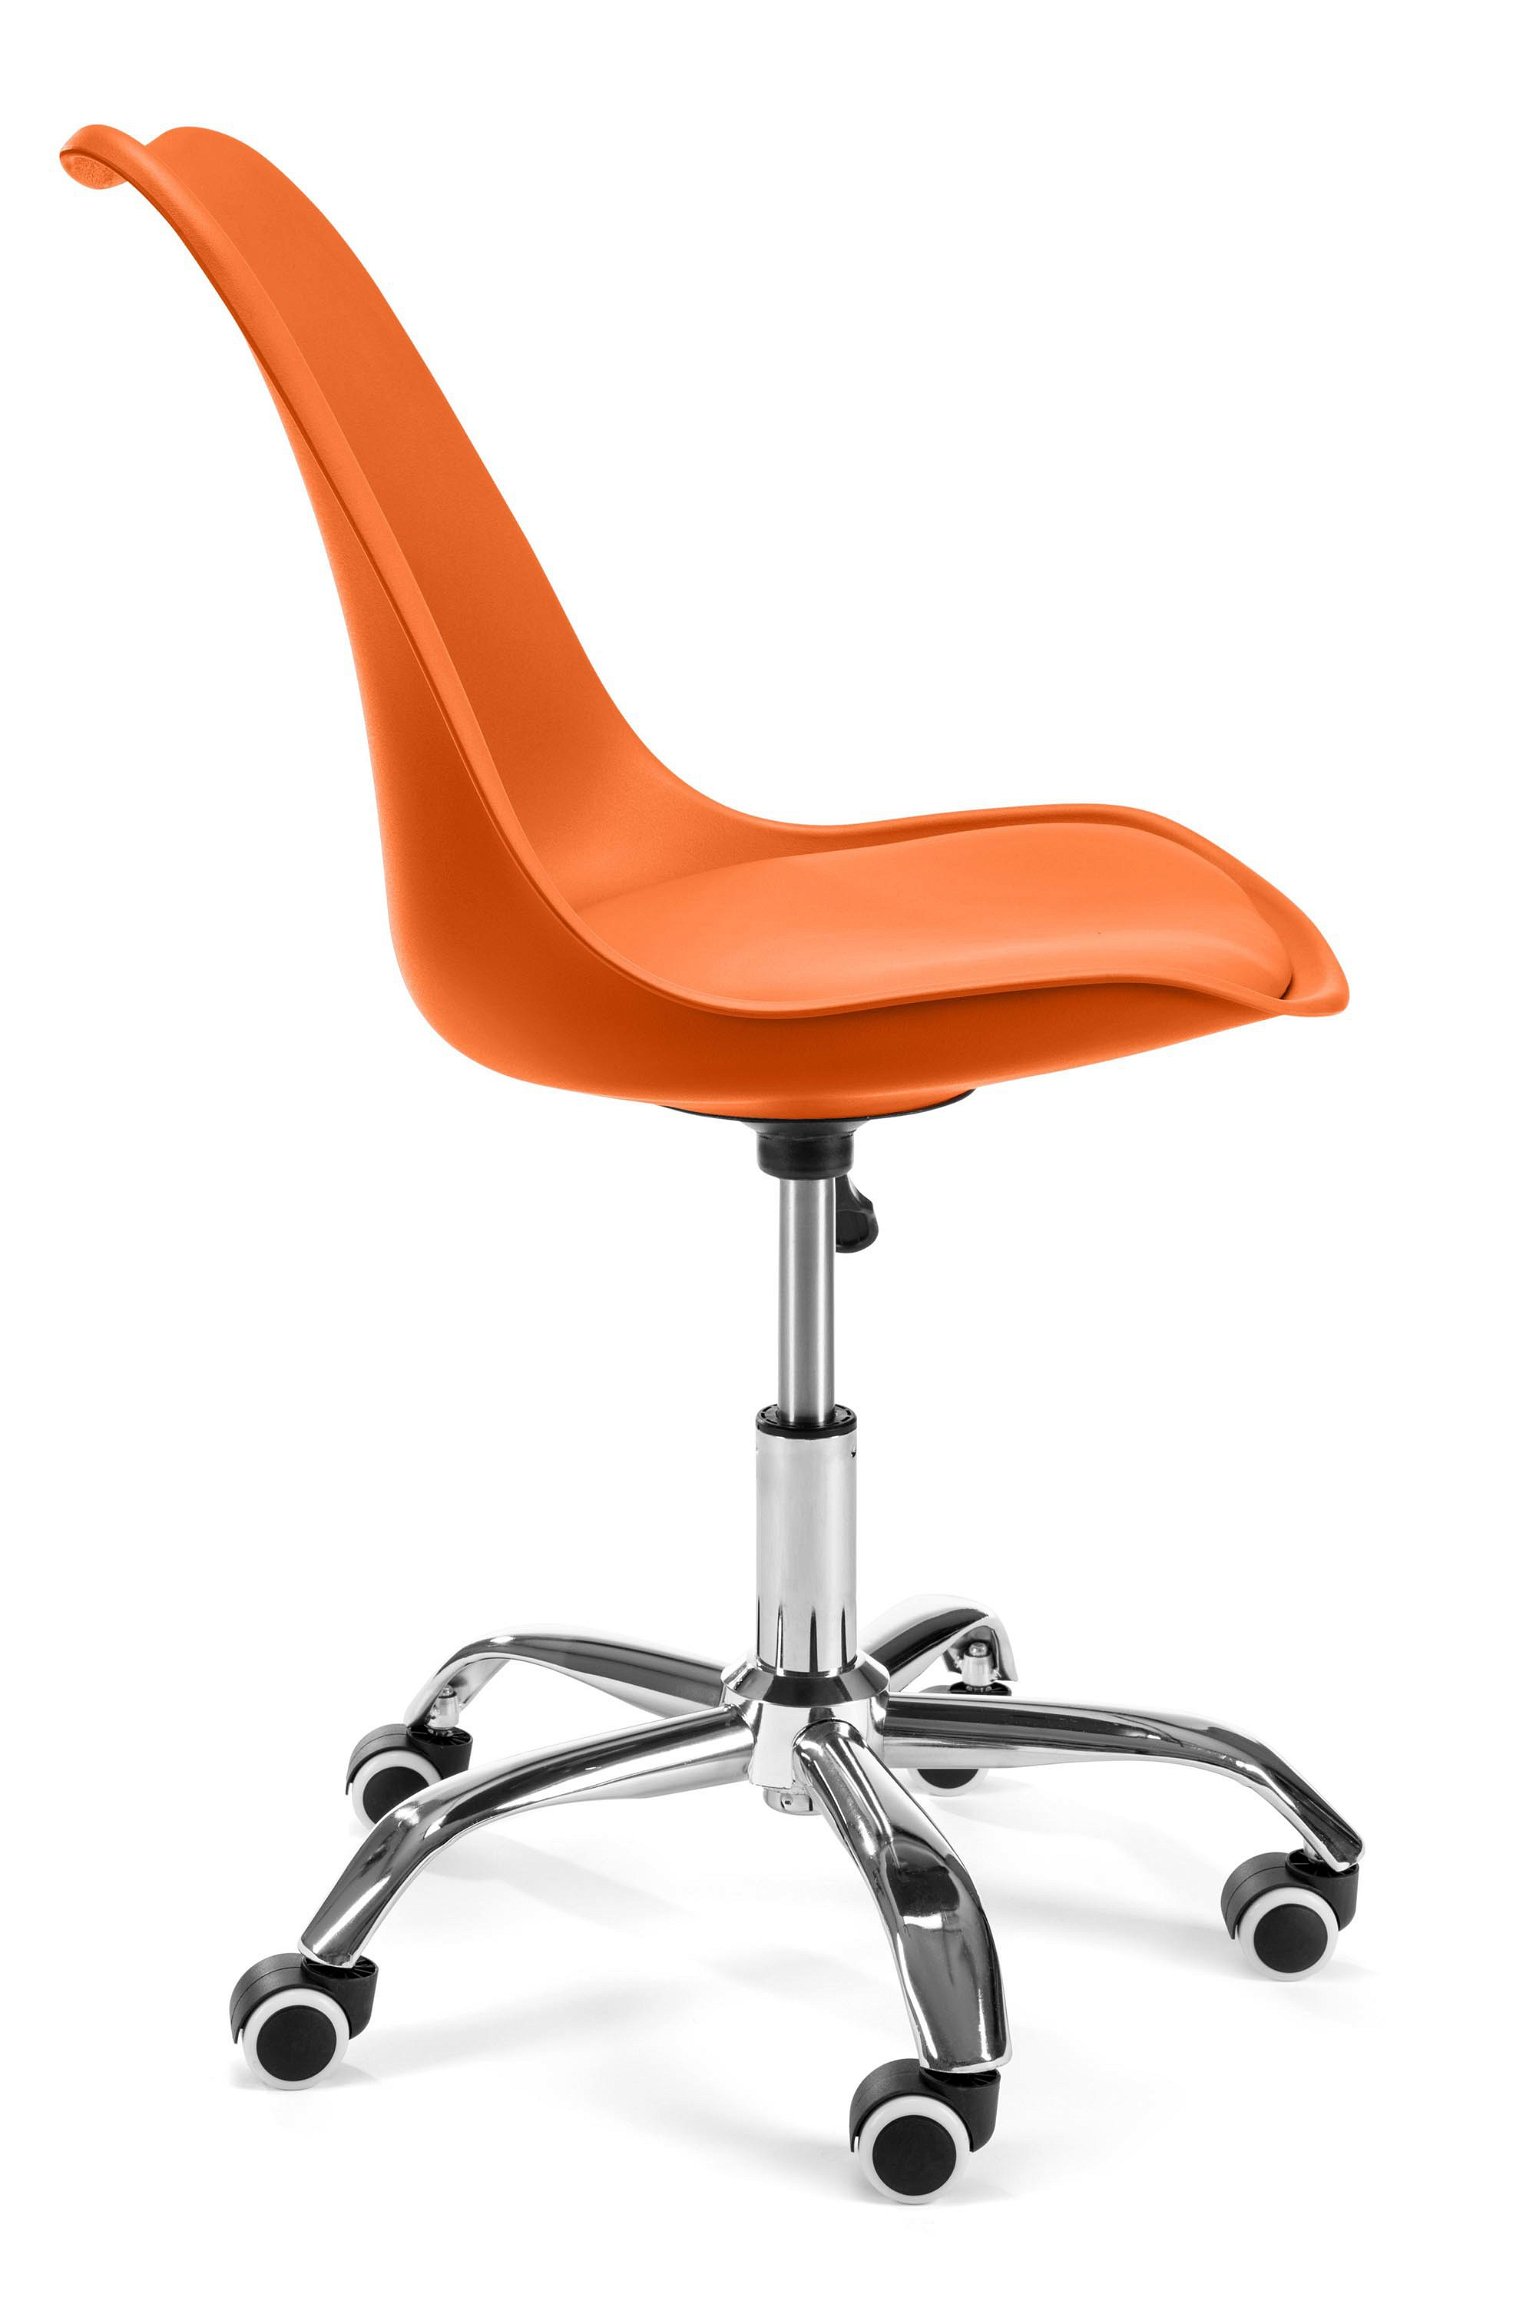 Vaikiška kėdė FD005, oranžinė - 2